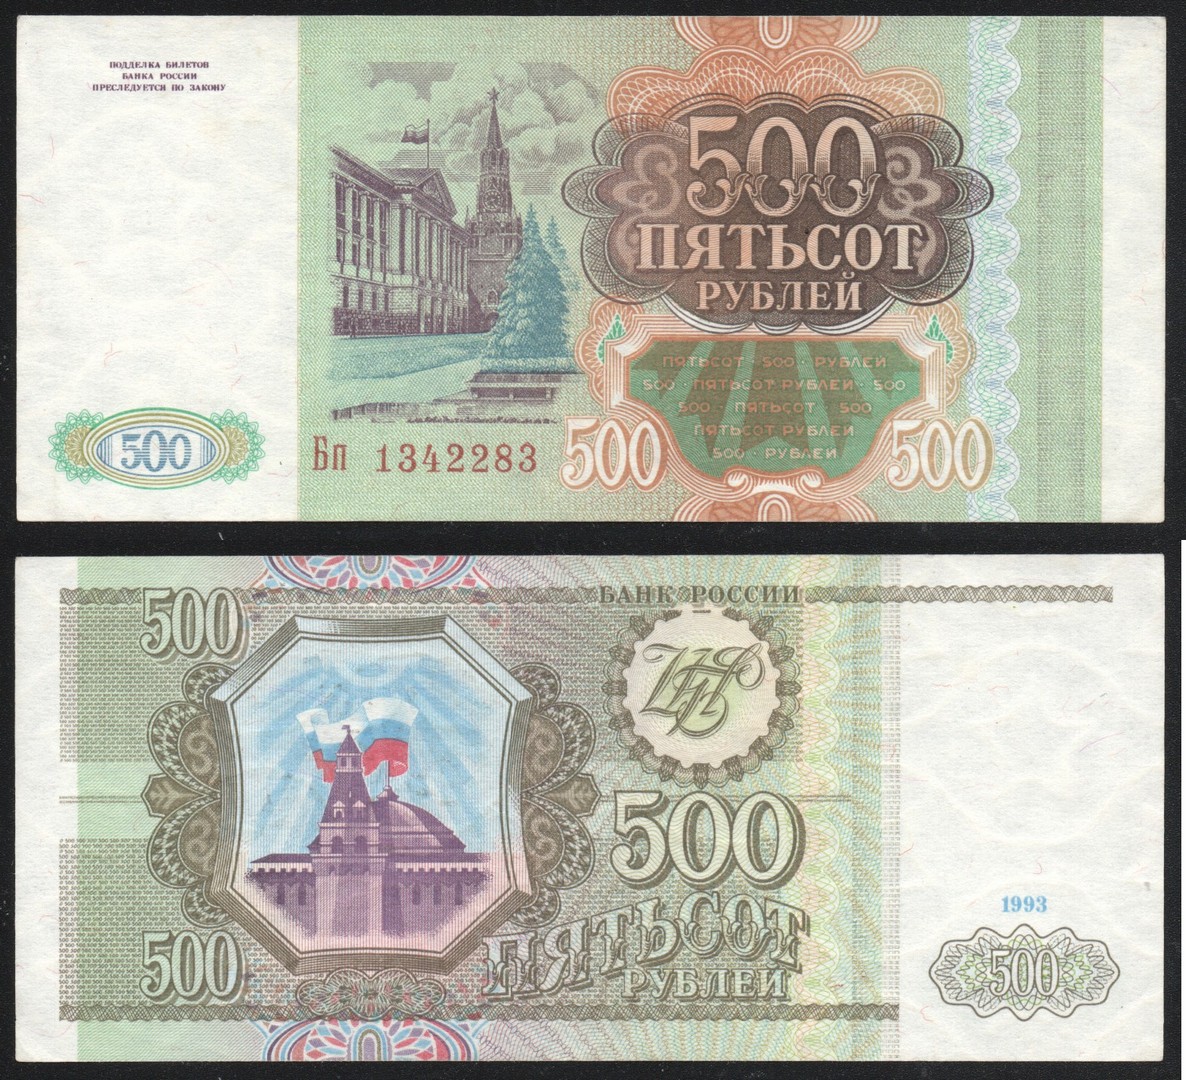 500 Рублей 1993. 500 Рублей 1993 года. Купюры СССР 1993 года. Тысяча рублей 1993 бумажная.